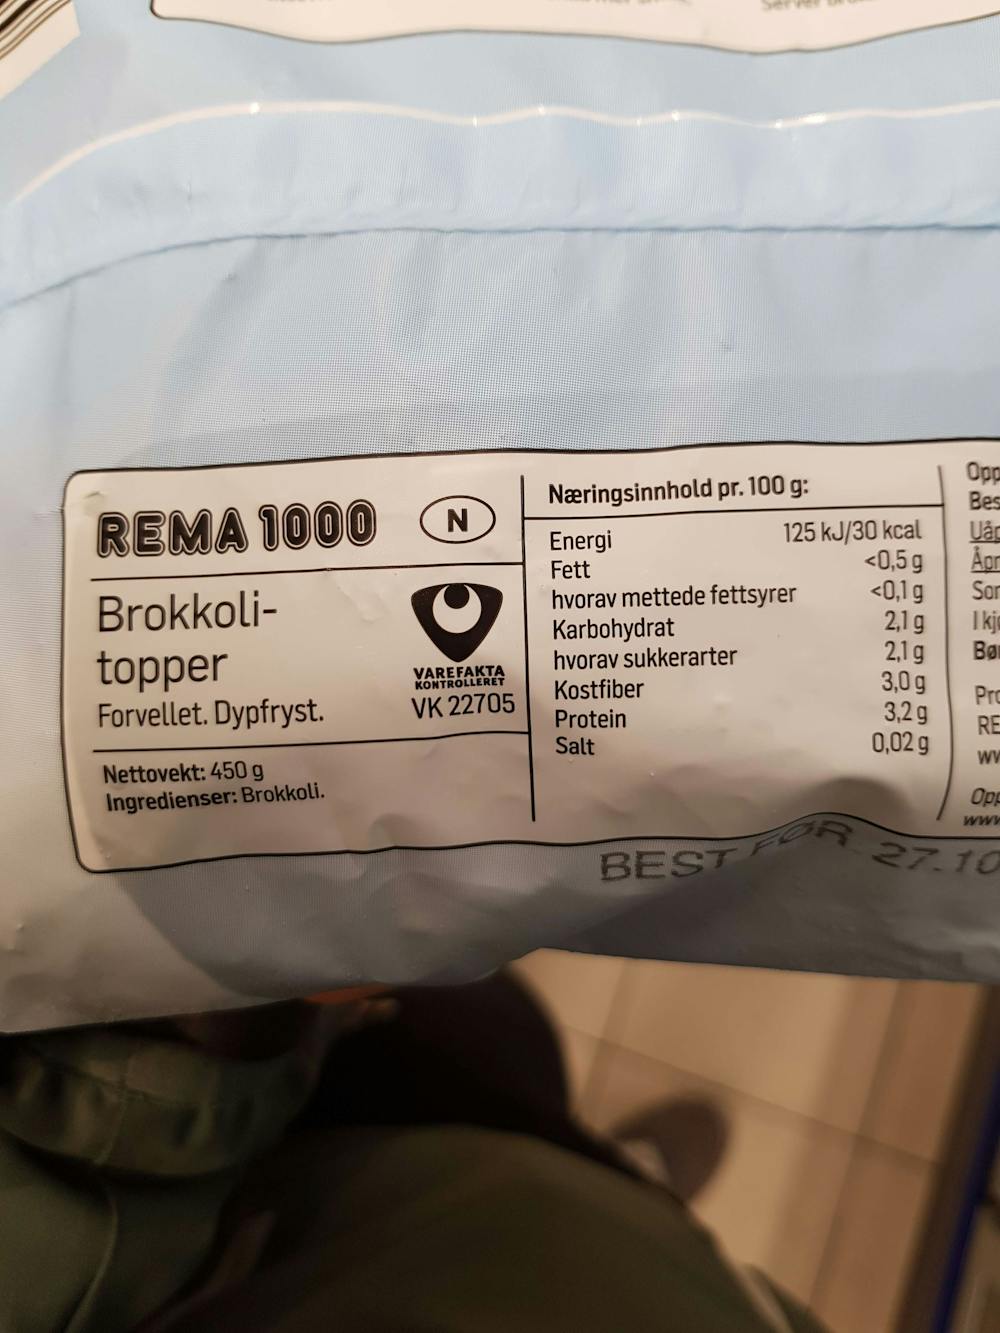 Ingredienslisten til Brokkolitopper, Rema 1000